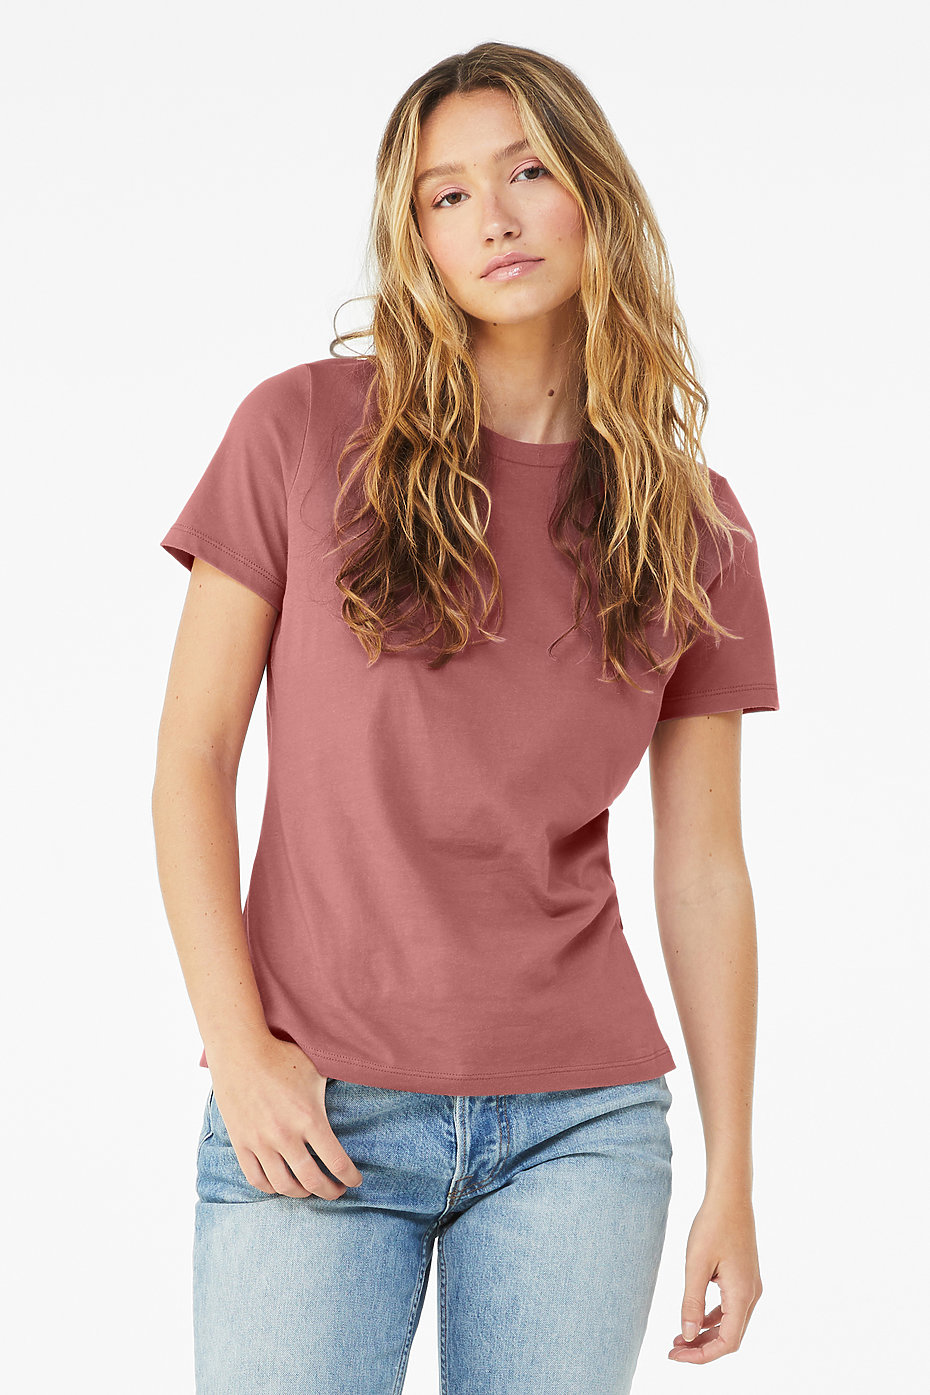 Plain Jersey T Shirts | Wholesale Jersey T Shirts | Womens Bulk T Shirts |  BELLA+CANVAS ®